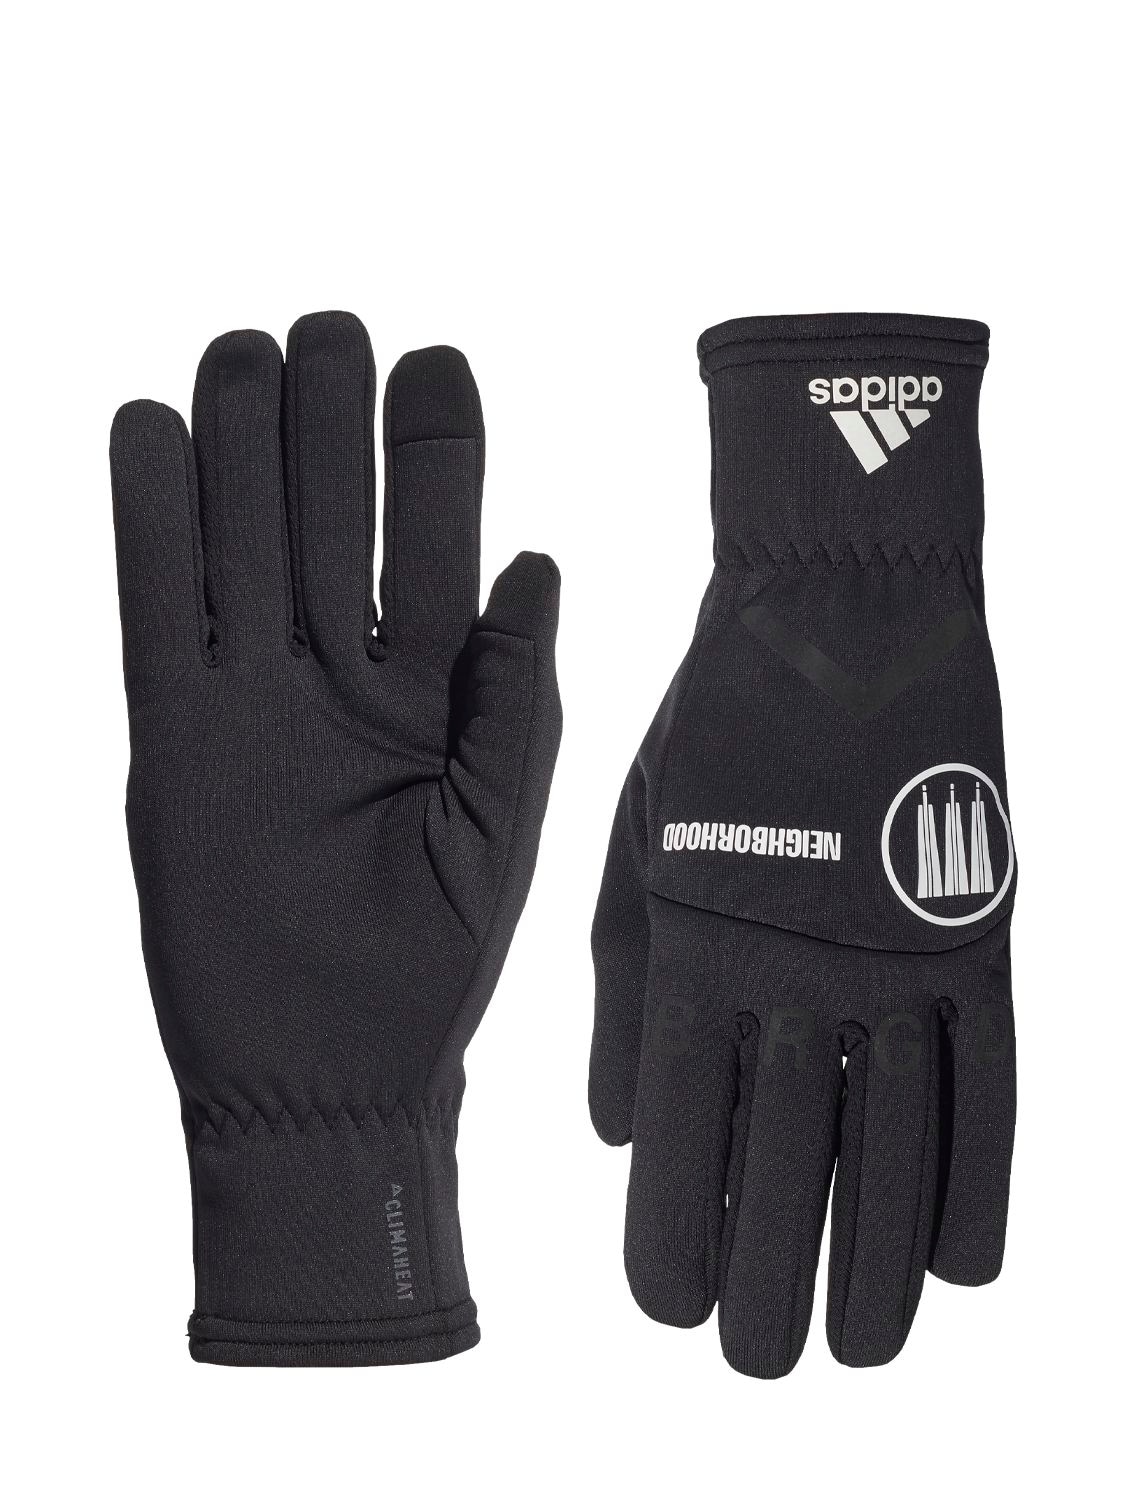 Adidas Originals Statement Nbhd Running Gloves In Black